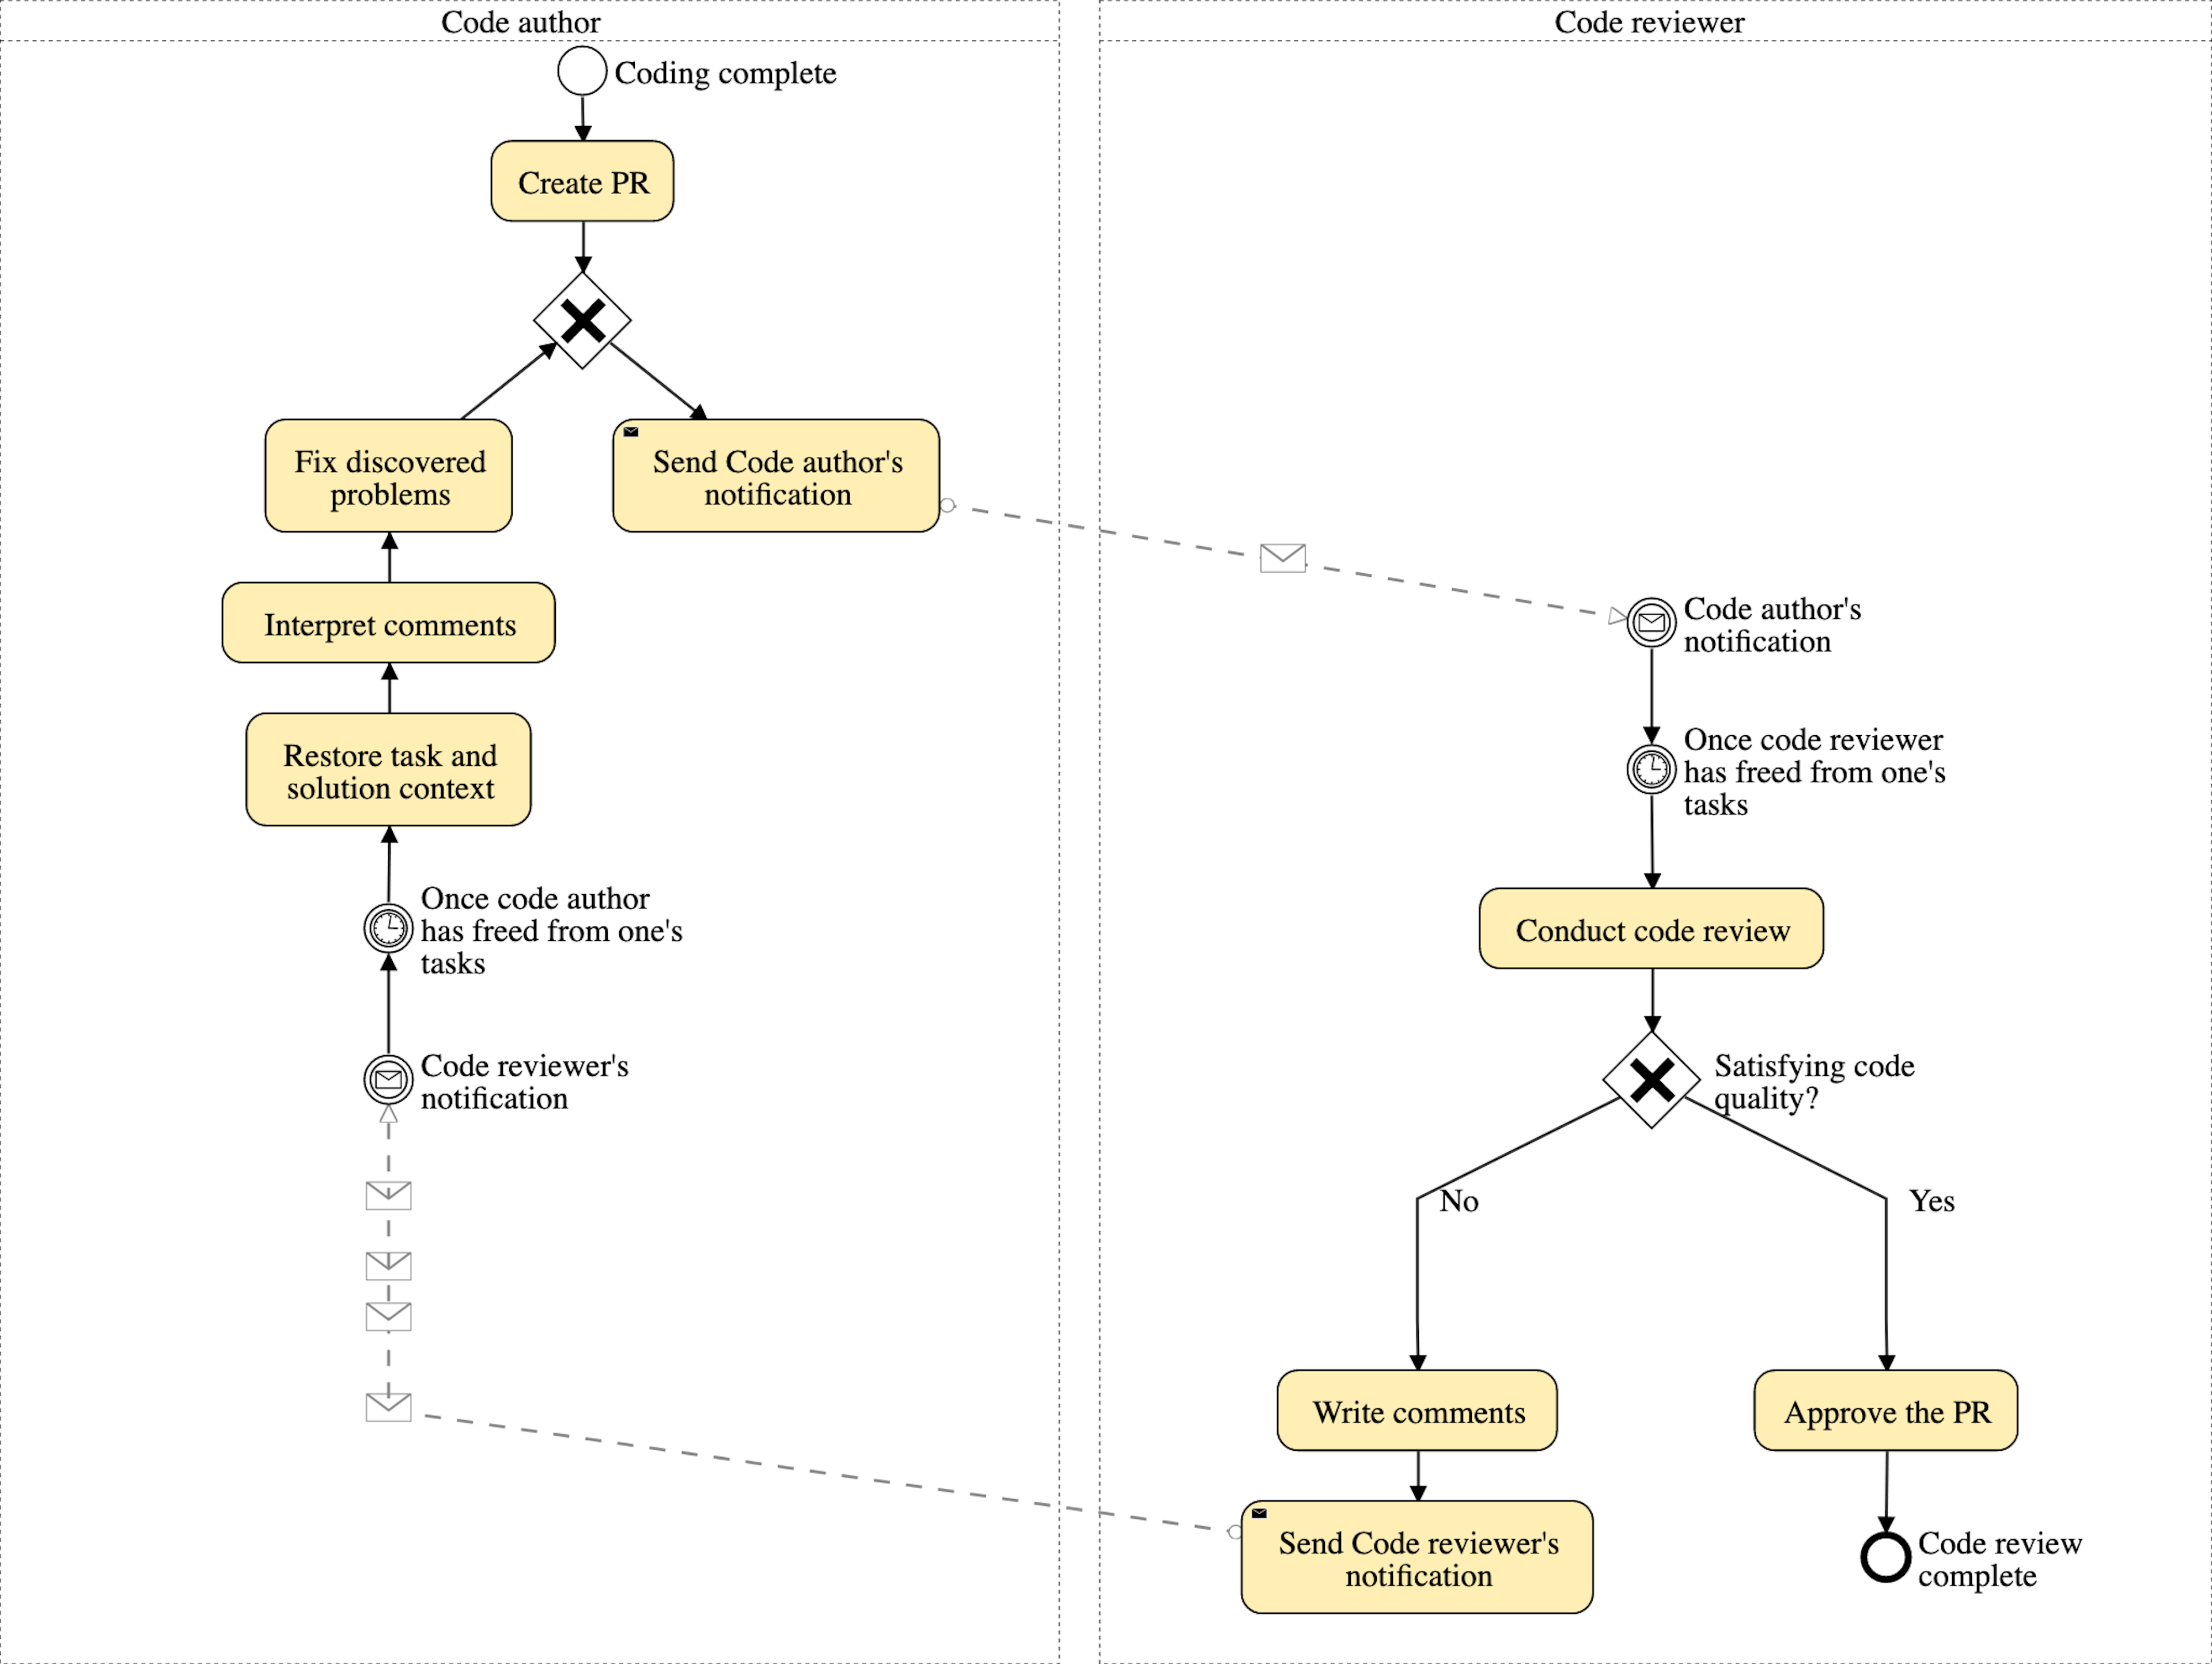 Le schéma classique du processus de revue de code